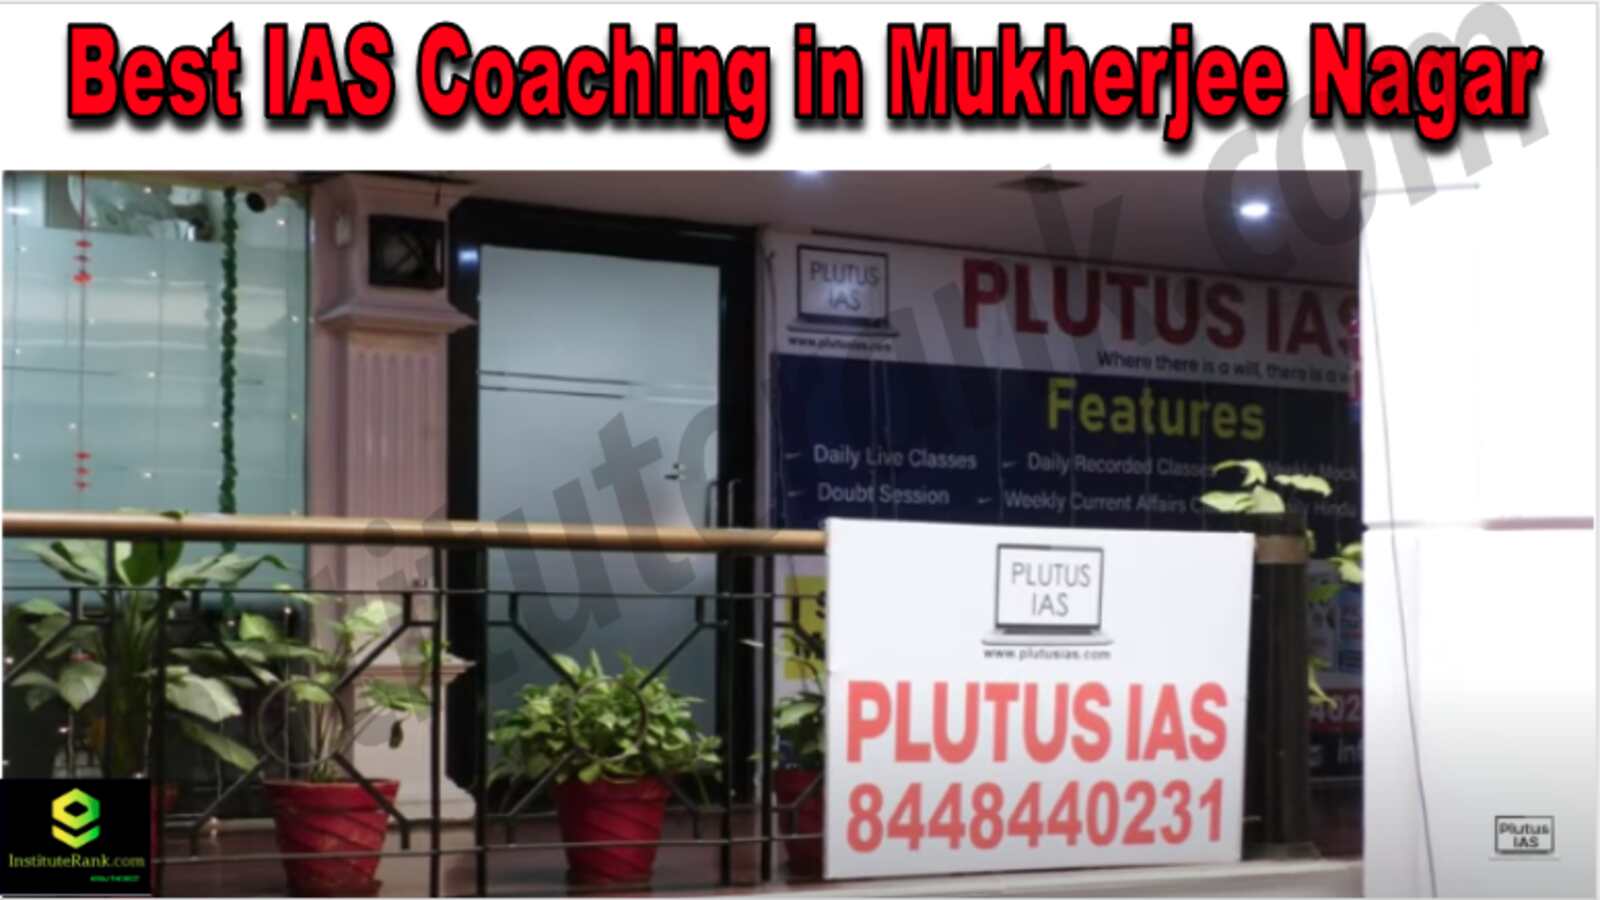 Best IAS Coaching in Mukherjee Nagar